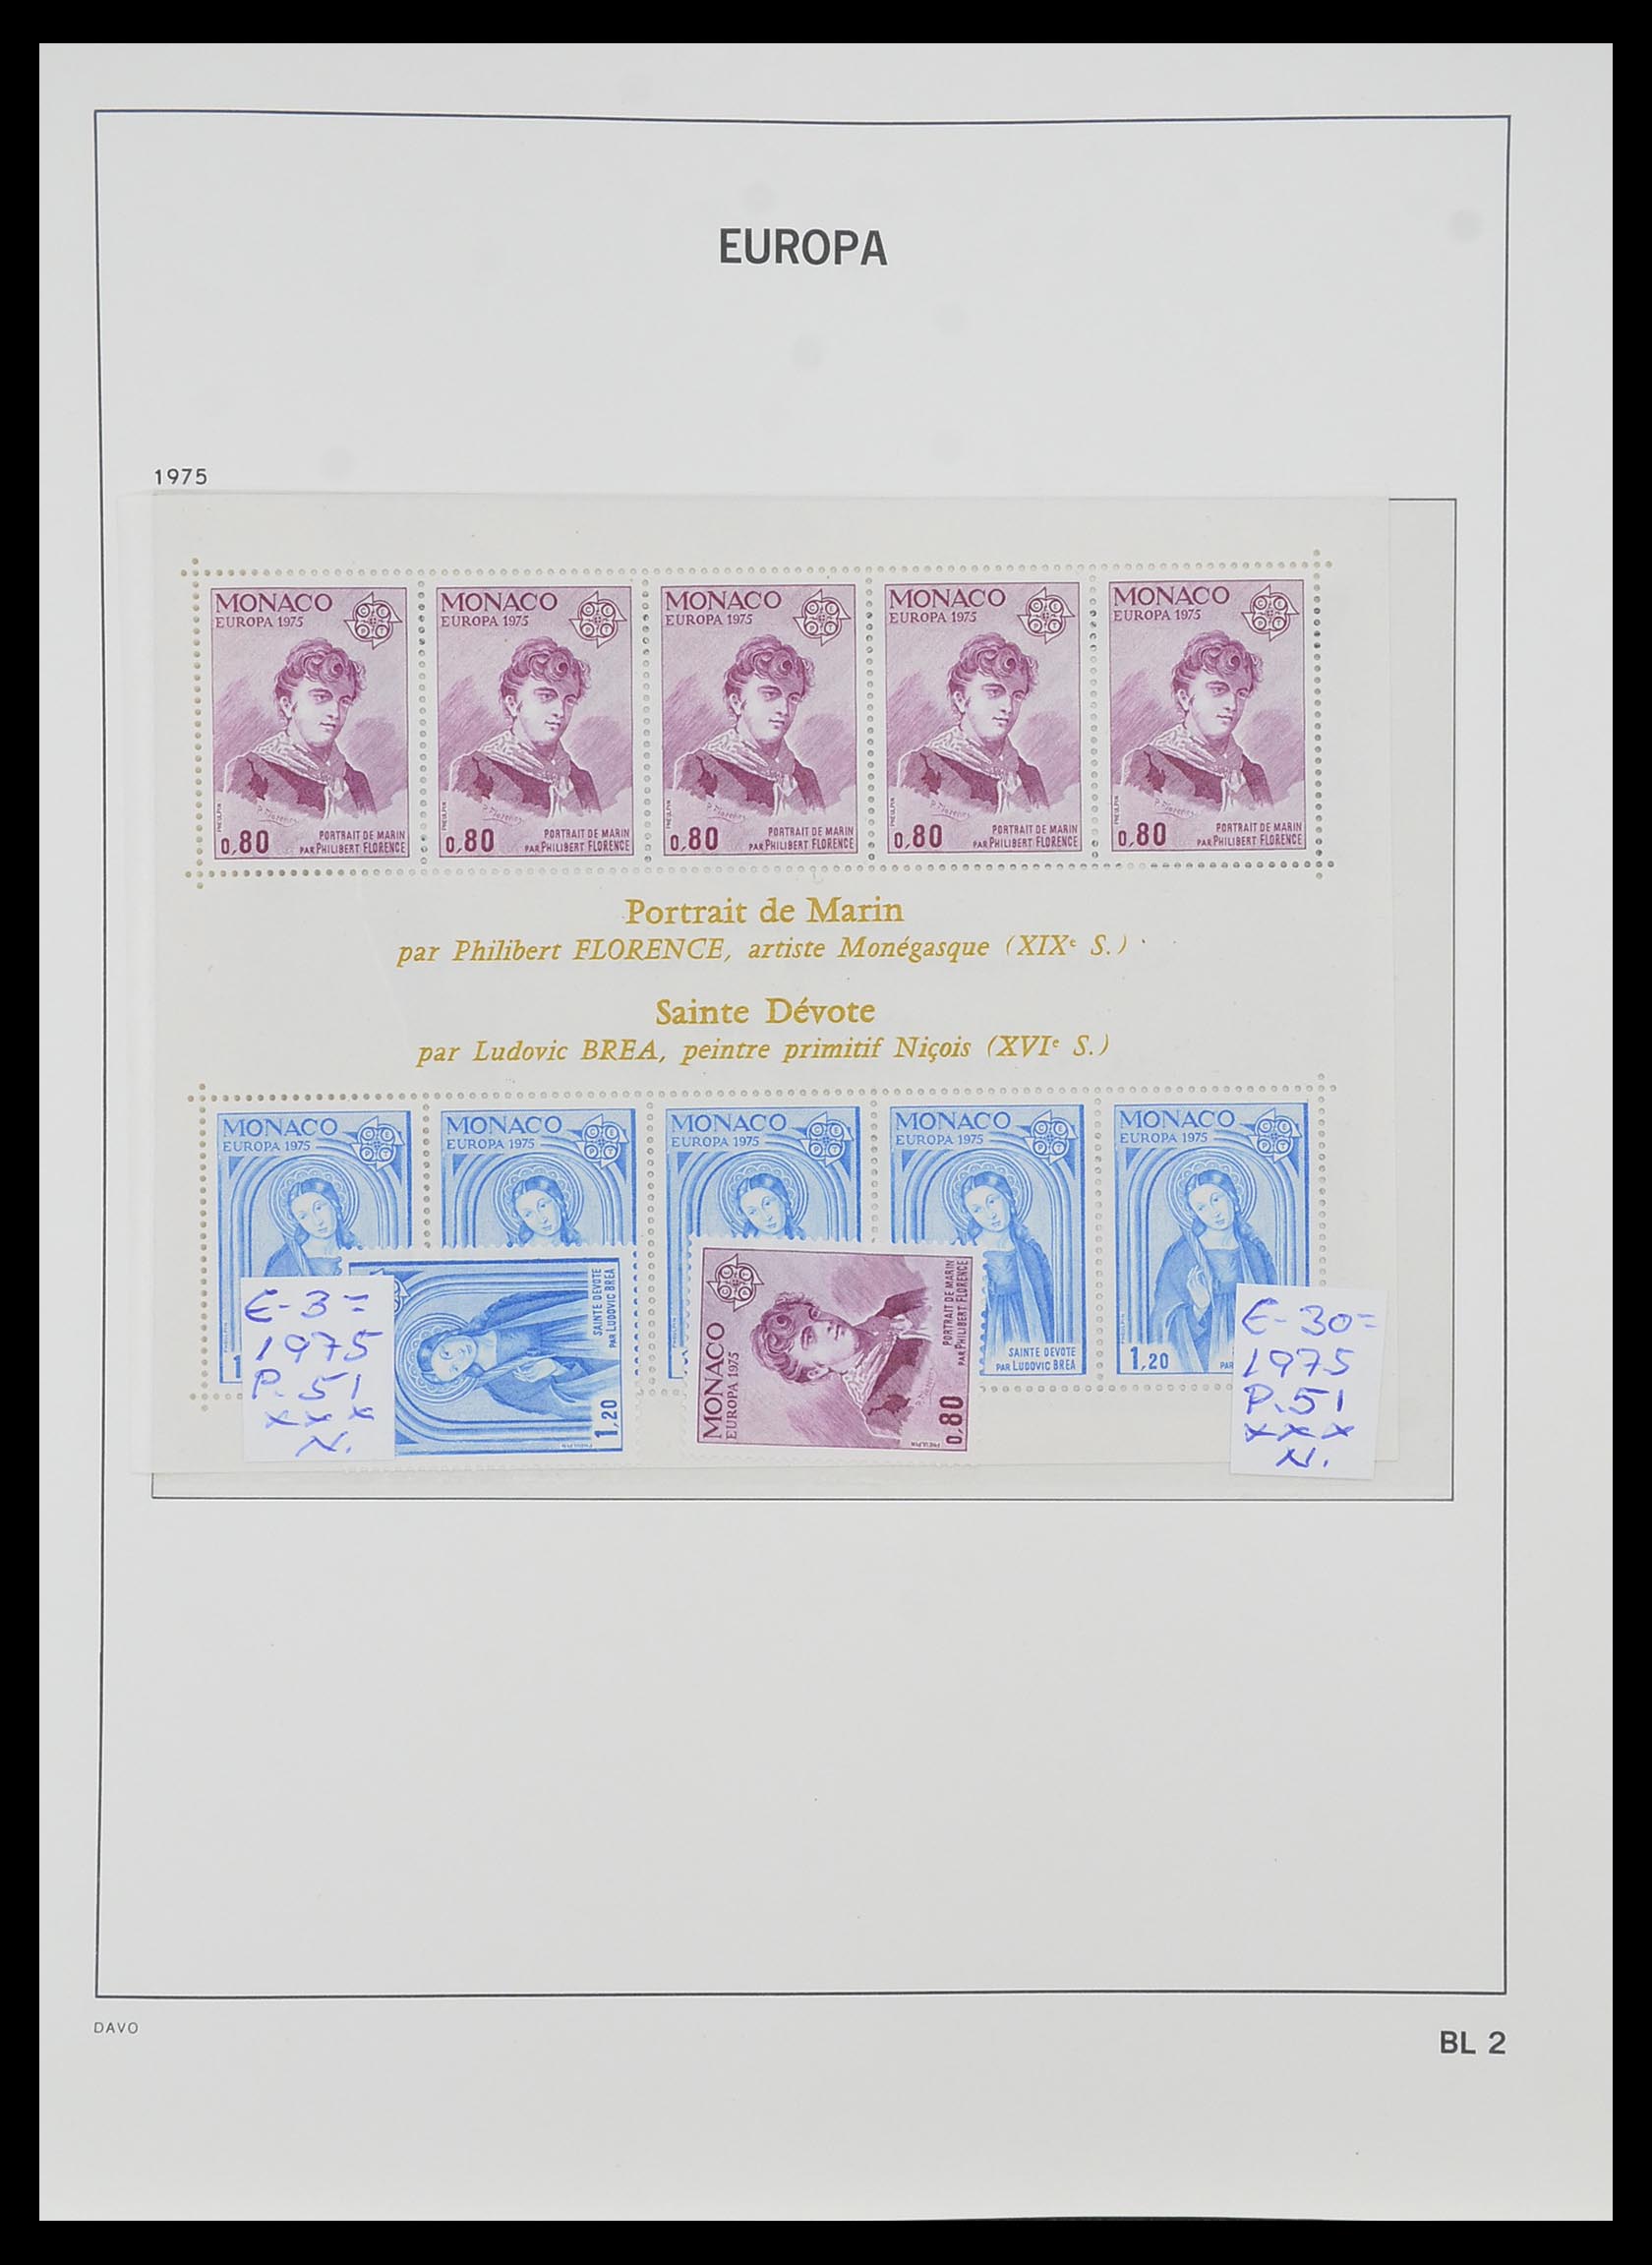 33985 002 - Stamp collection 33985 Europa CEPT souvenir sheets 1974-2014.